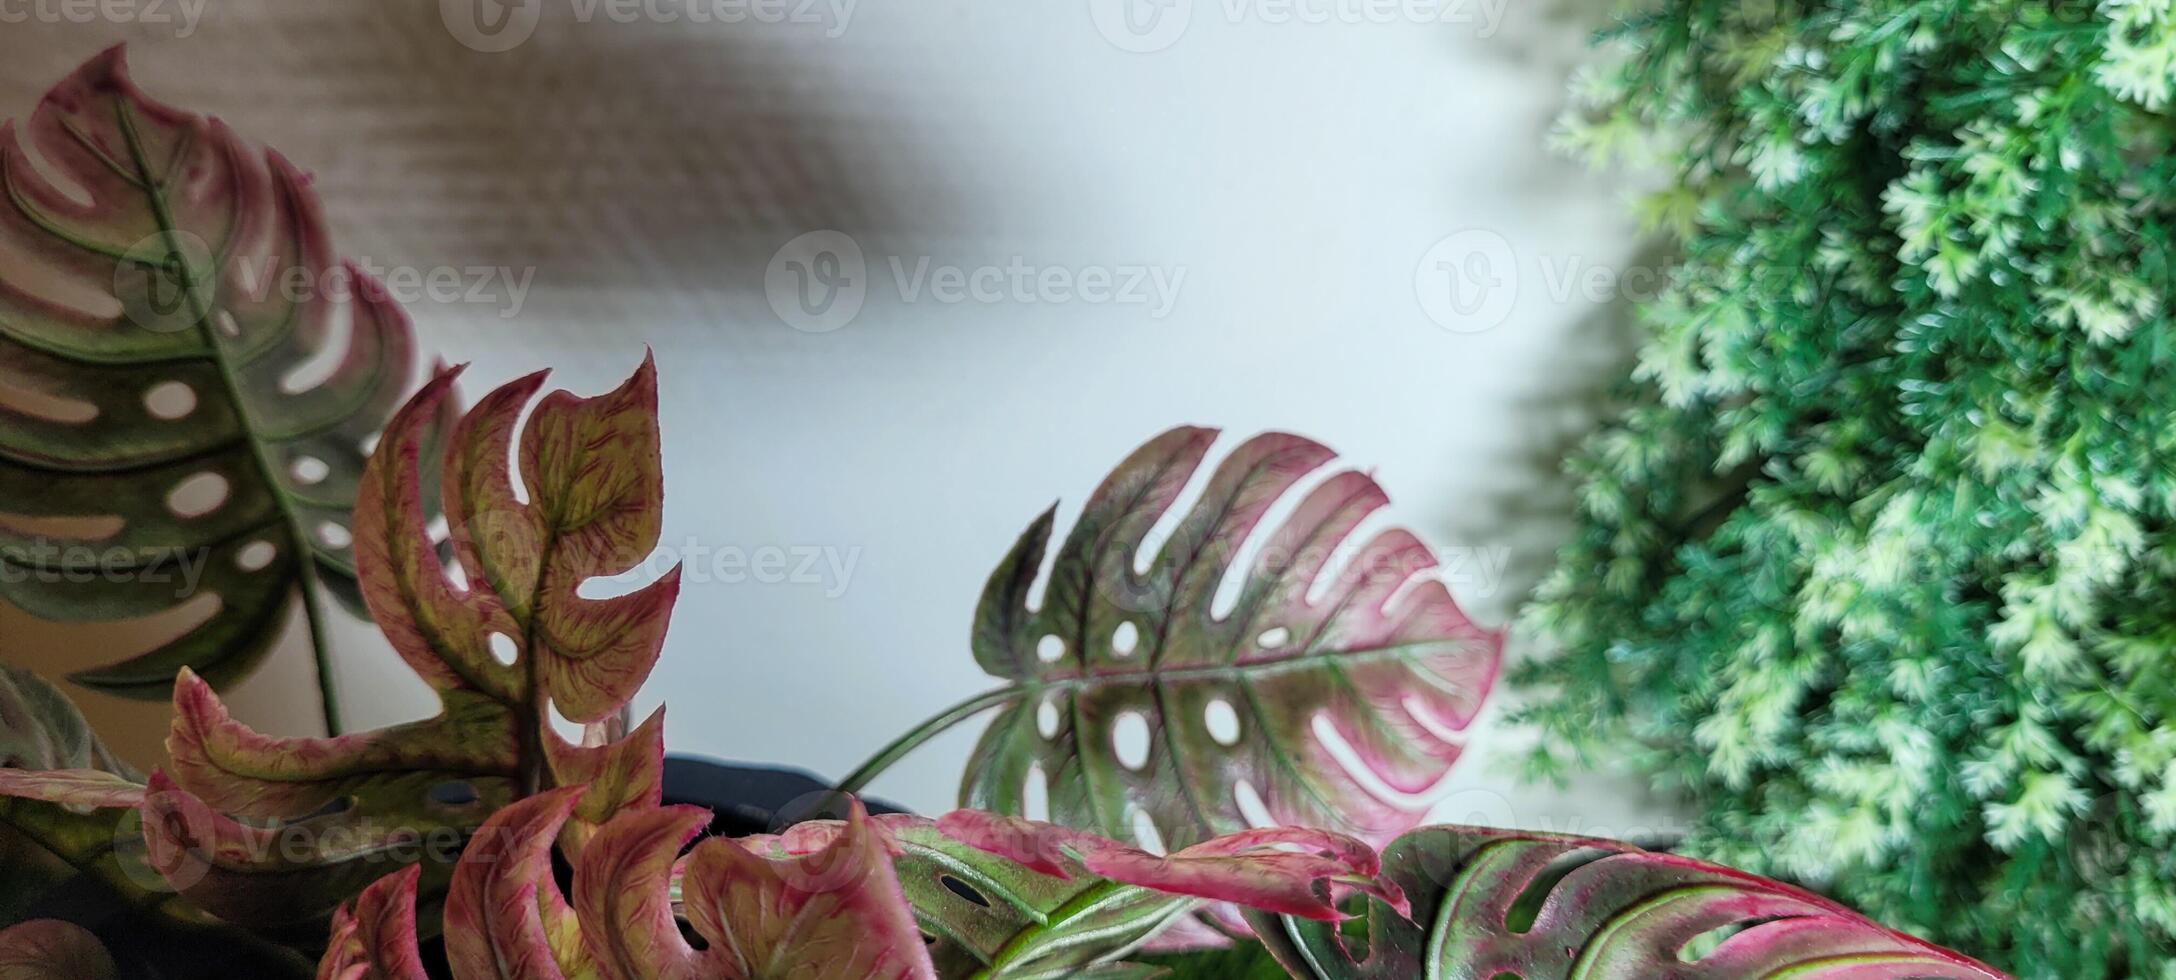 tropical planta con verde hojas foto